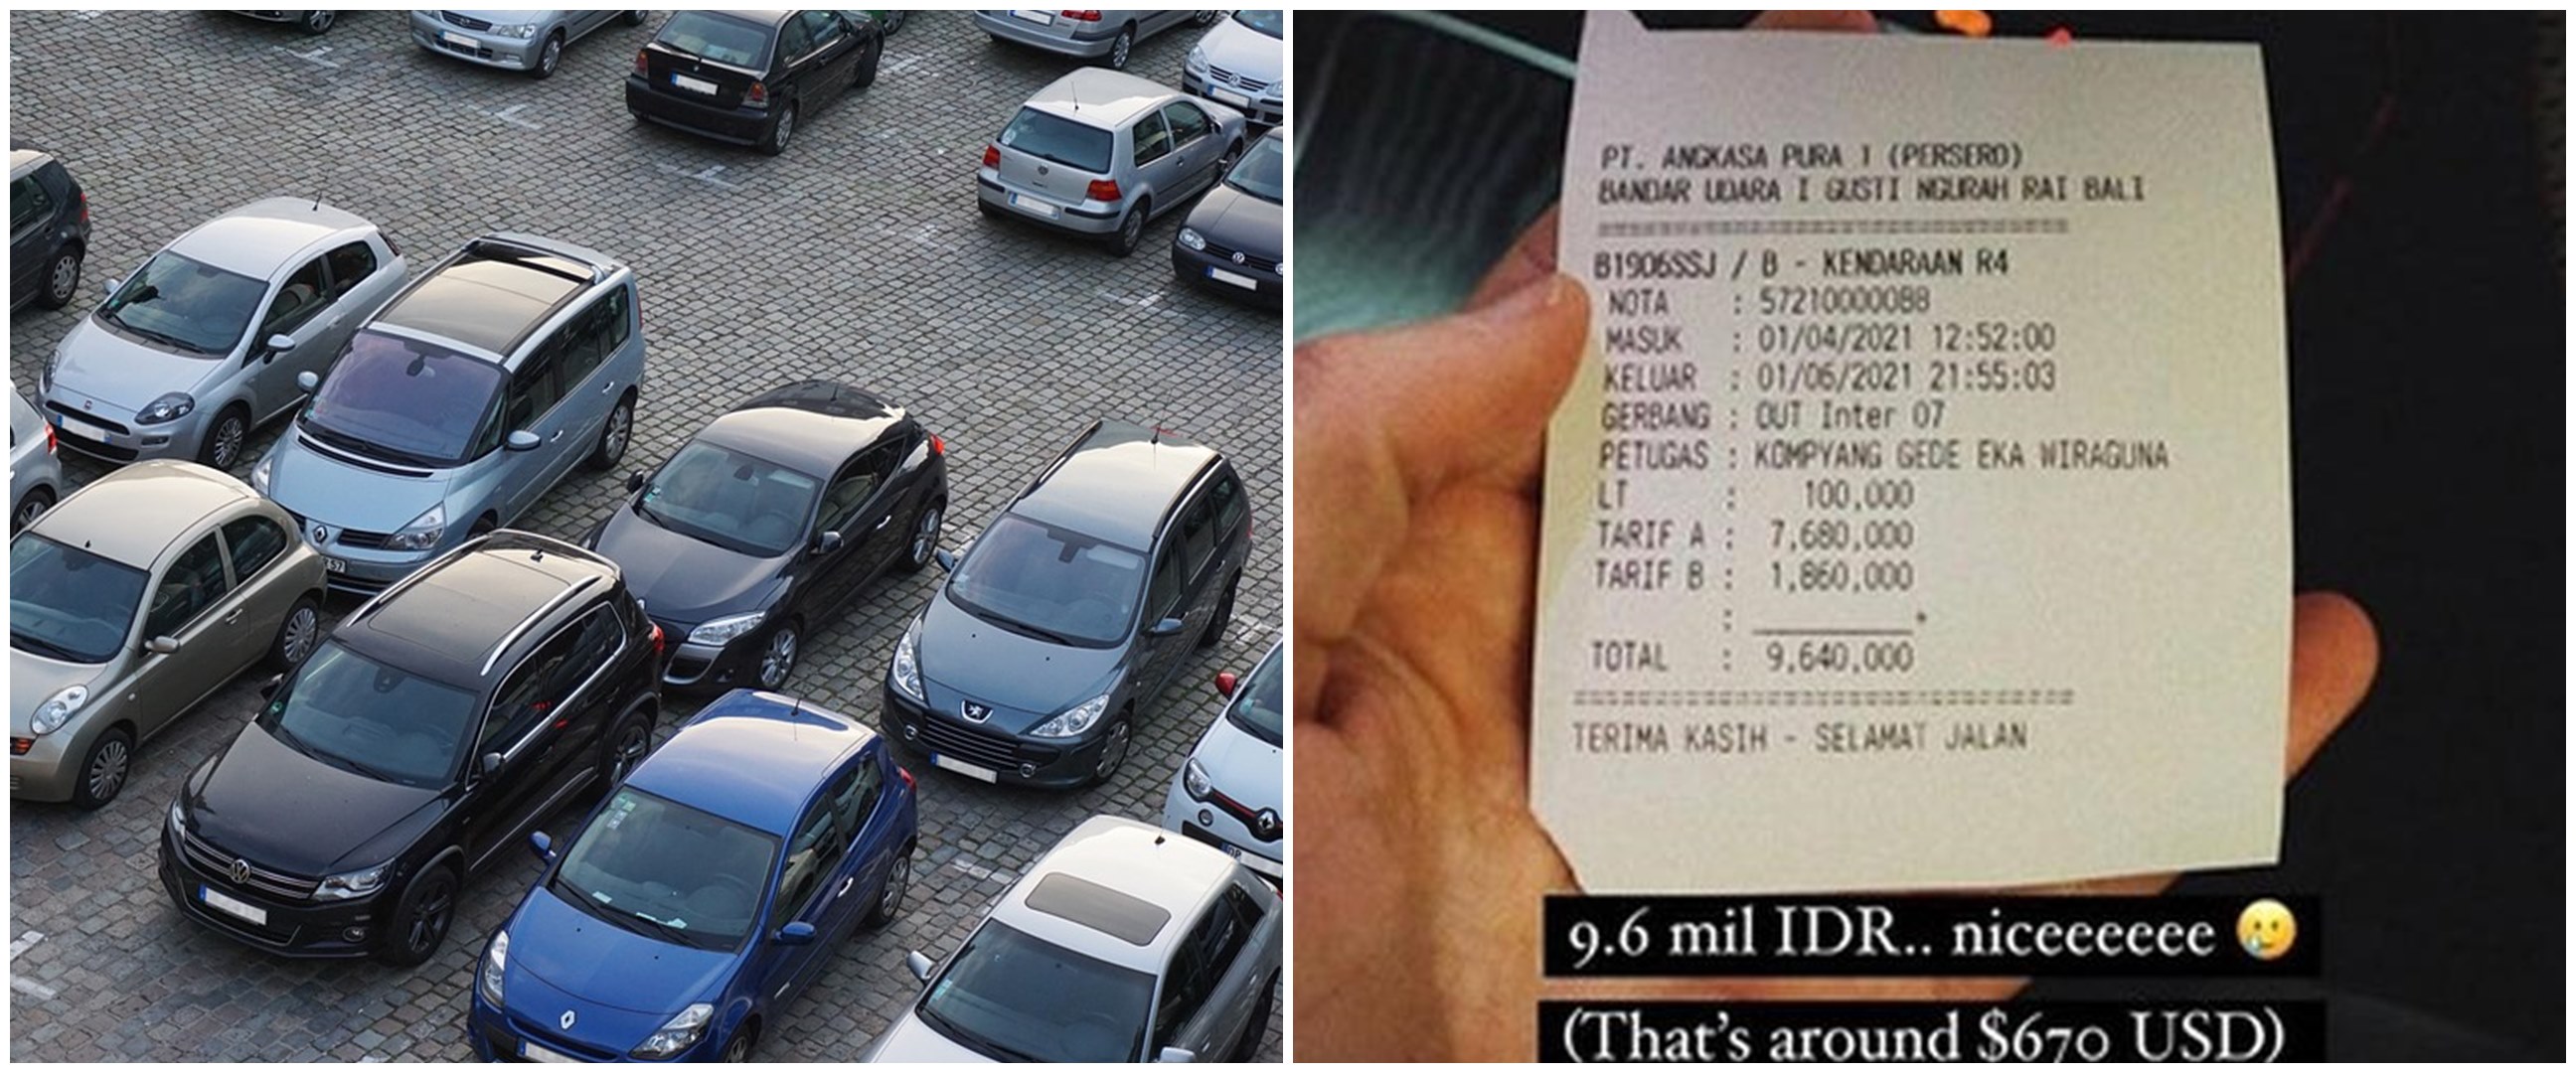 Viral cerita bule bayar Rp 9,6 juta parkir di bandara selama 2 bulan